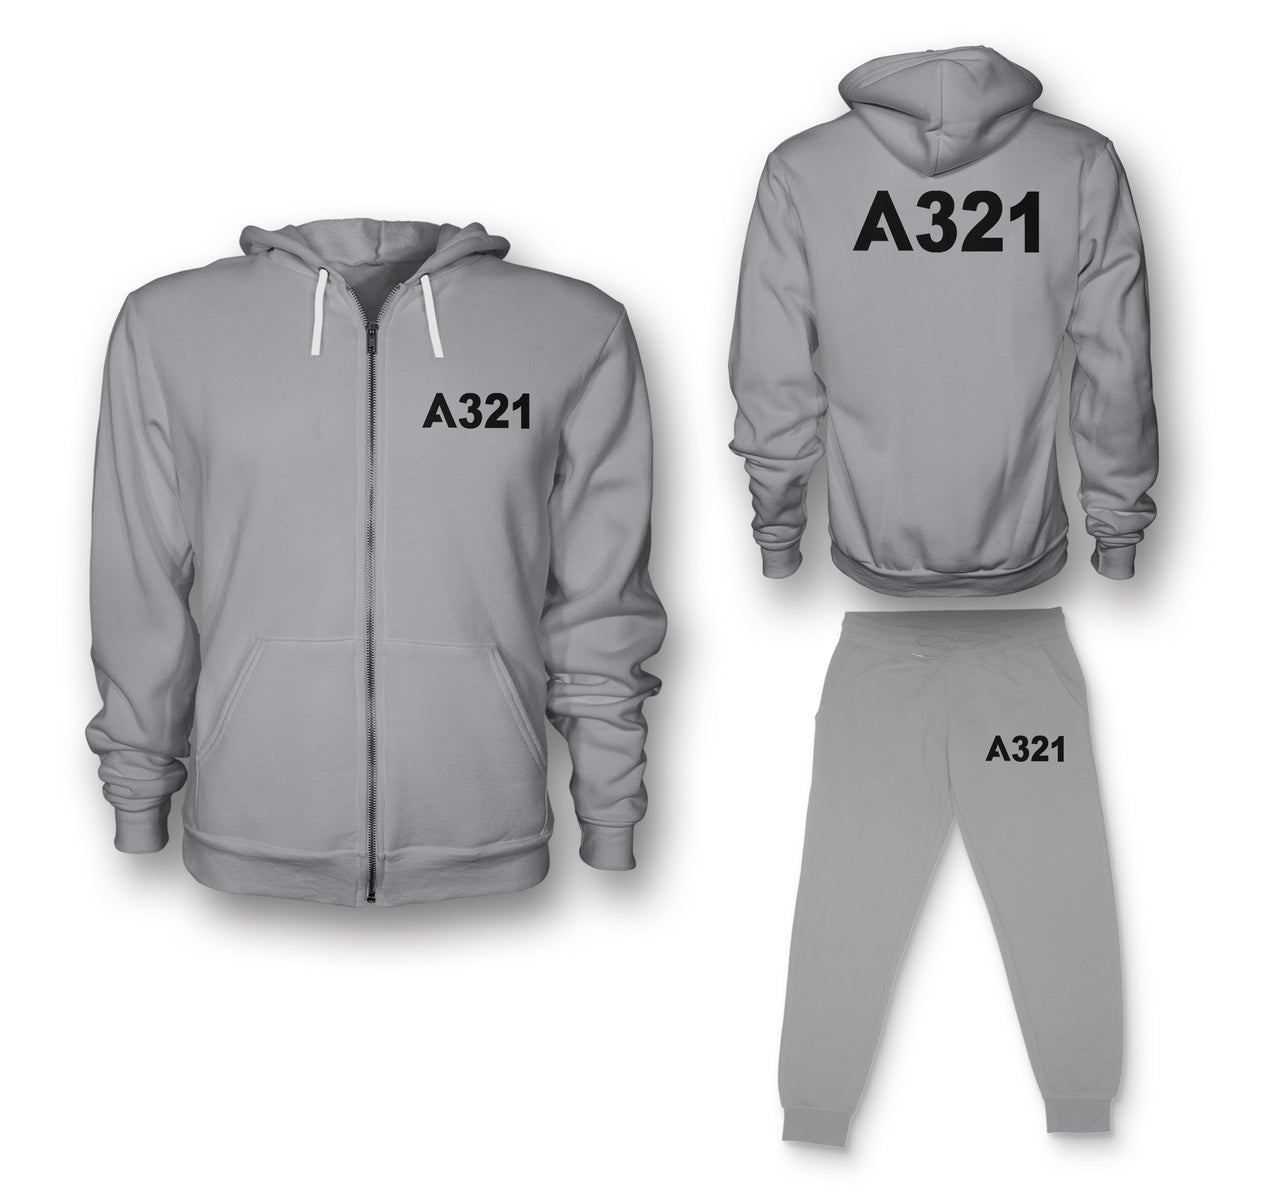 A321 Flat Text Designed Zipped Hoodies & Sweatpants Set